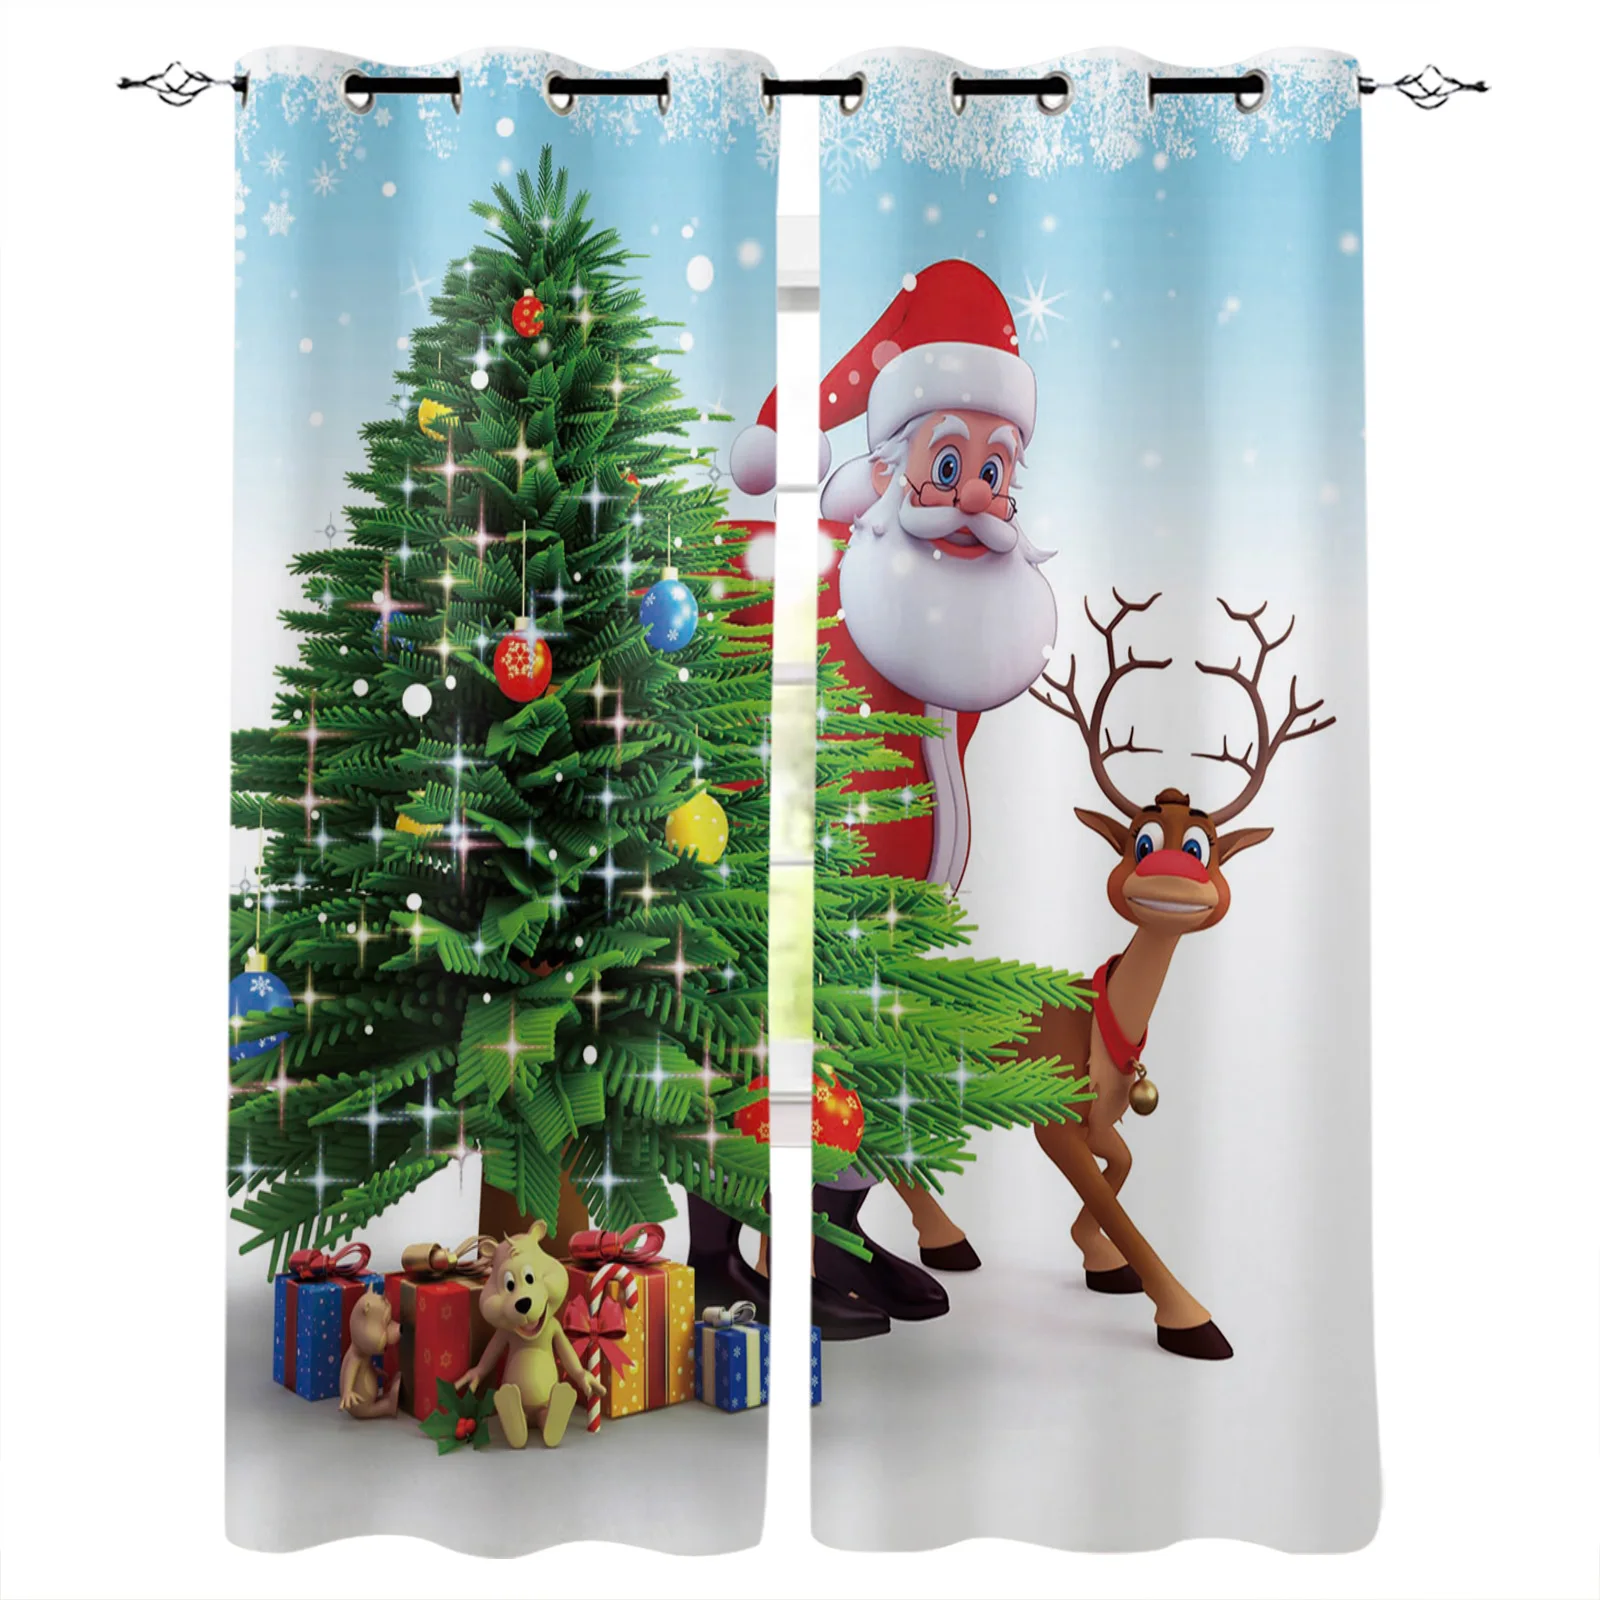 

Занавеска с Санта-Клаусом, оленем, рождественской елкой, занавески для окон, украшение для дома, подарок, Рождественский Декор, занавеска дл...